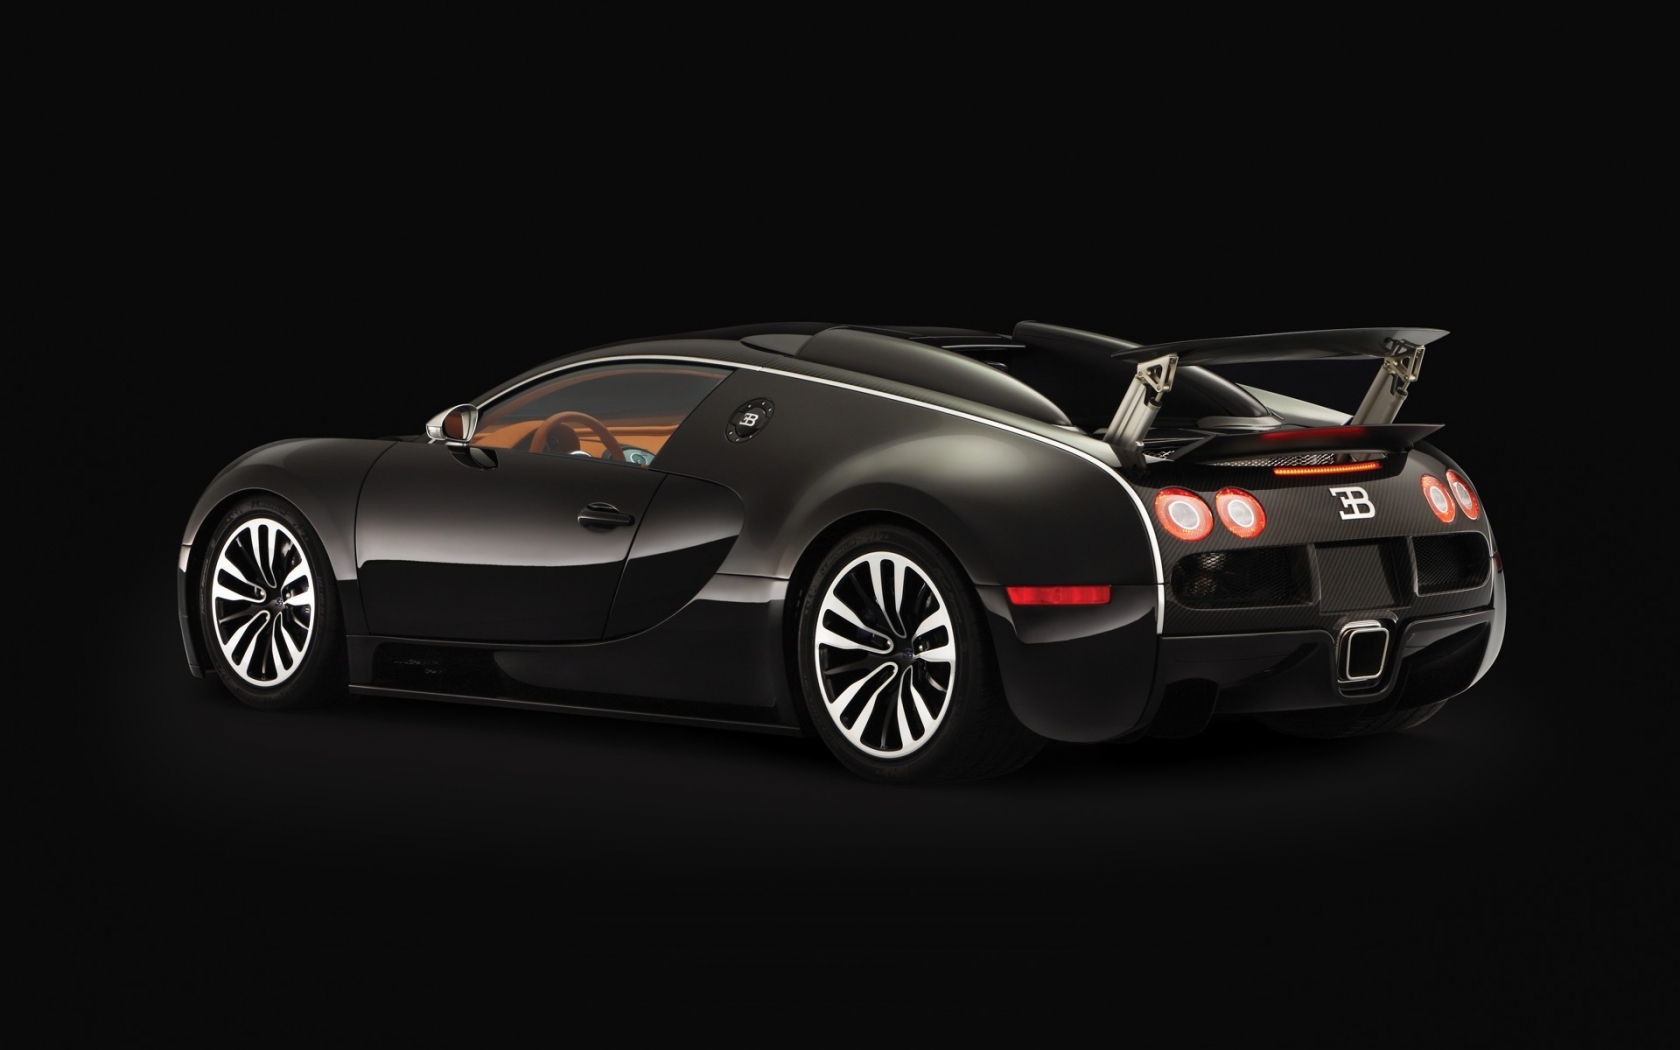 Bugatti Veyron Sang Noir 2008 - Rear Angle for 1680 x 1050 widescreen resolution